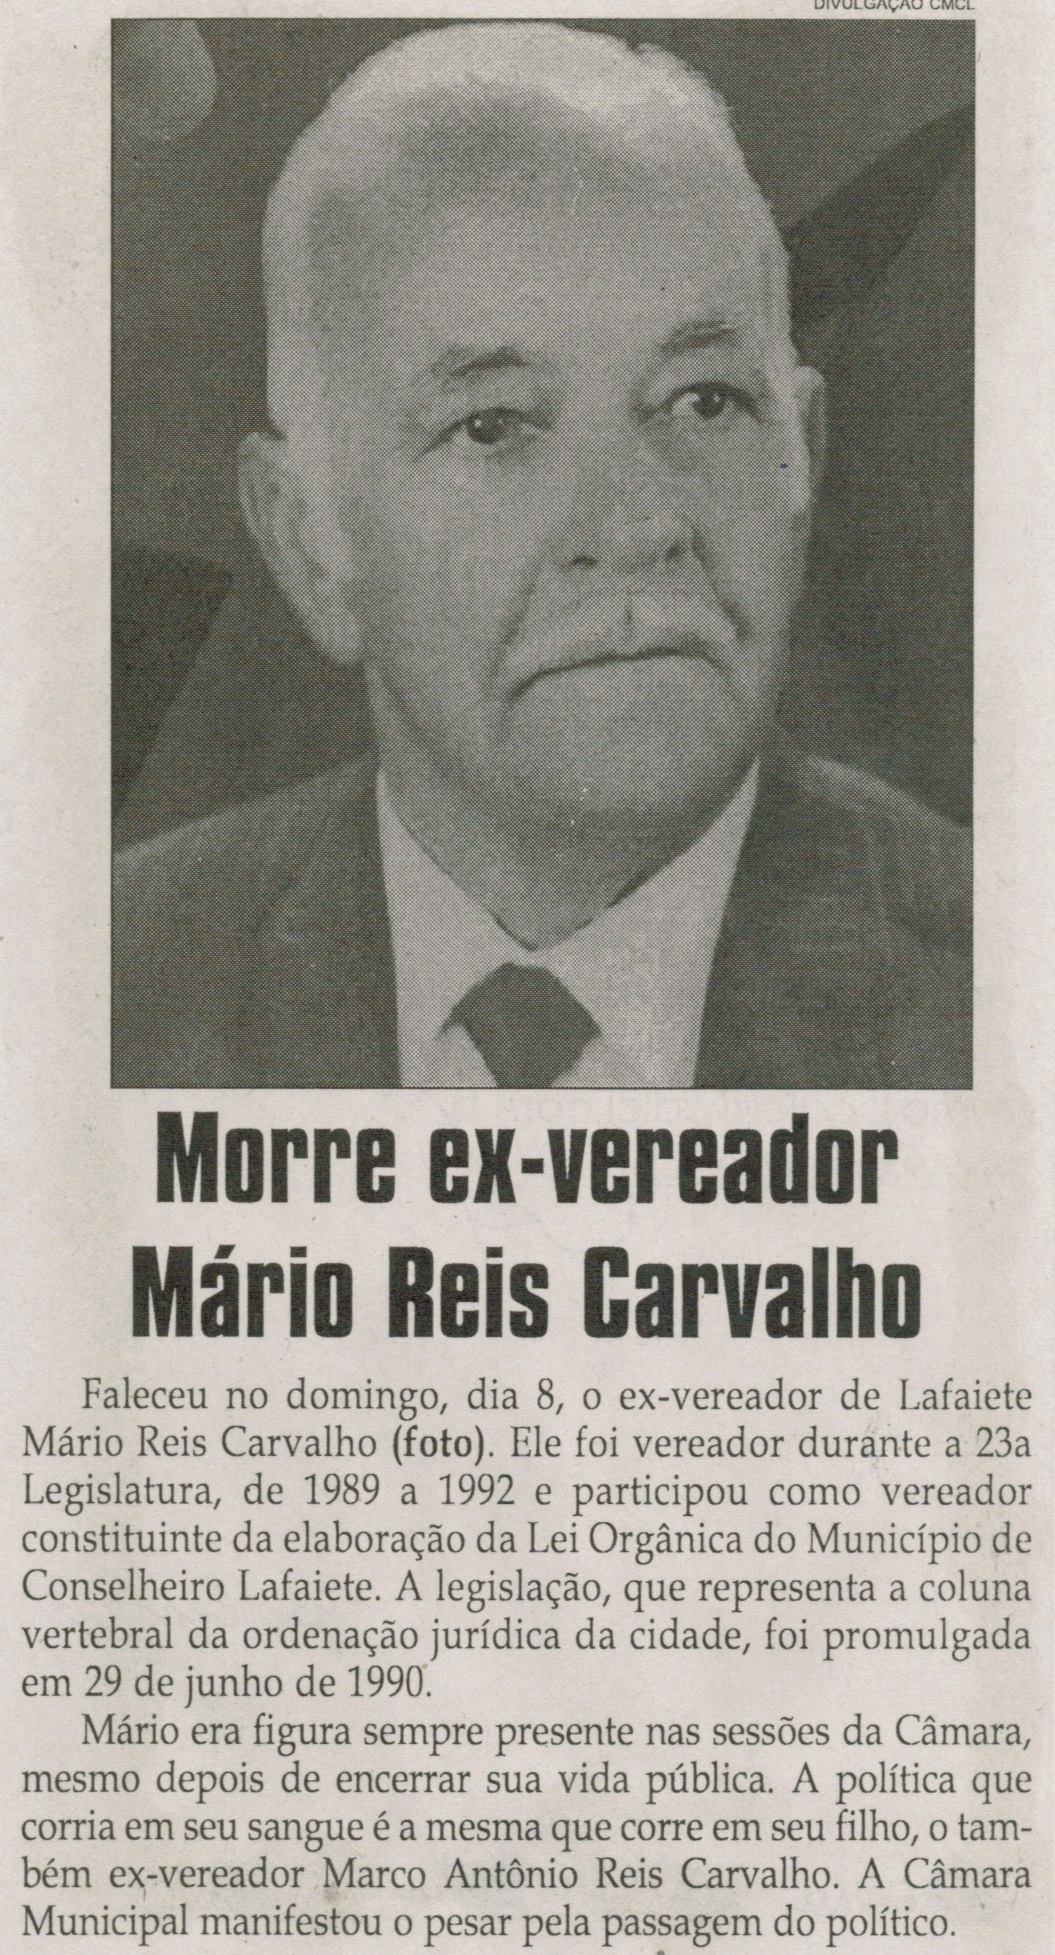 Morre ex-vereador Mário Reis Carvalho. Jornal Correio da Cidade, Conselheiro Lafaiete, 14 mar. 2015, p. C4.